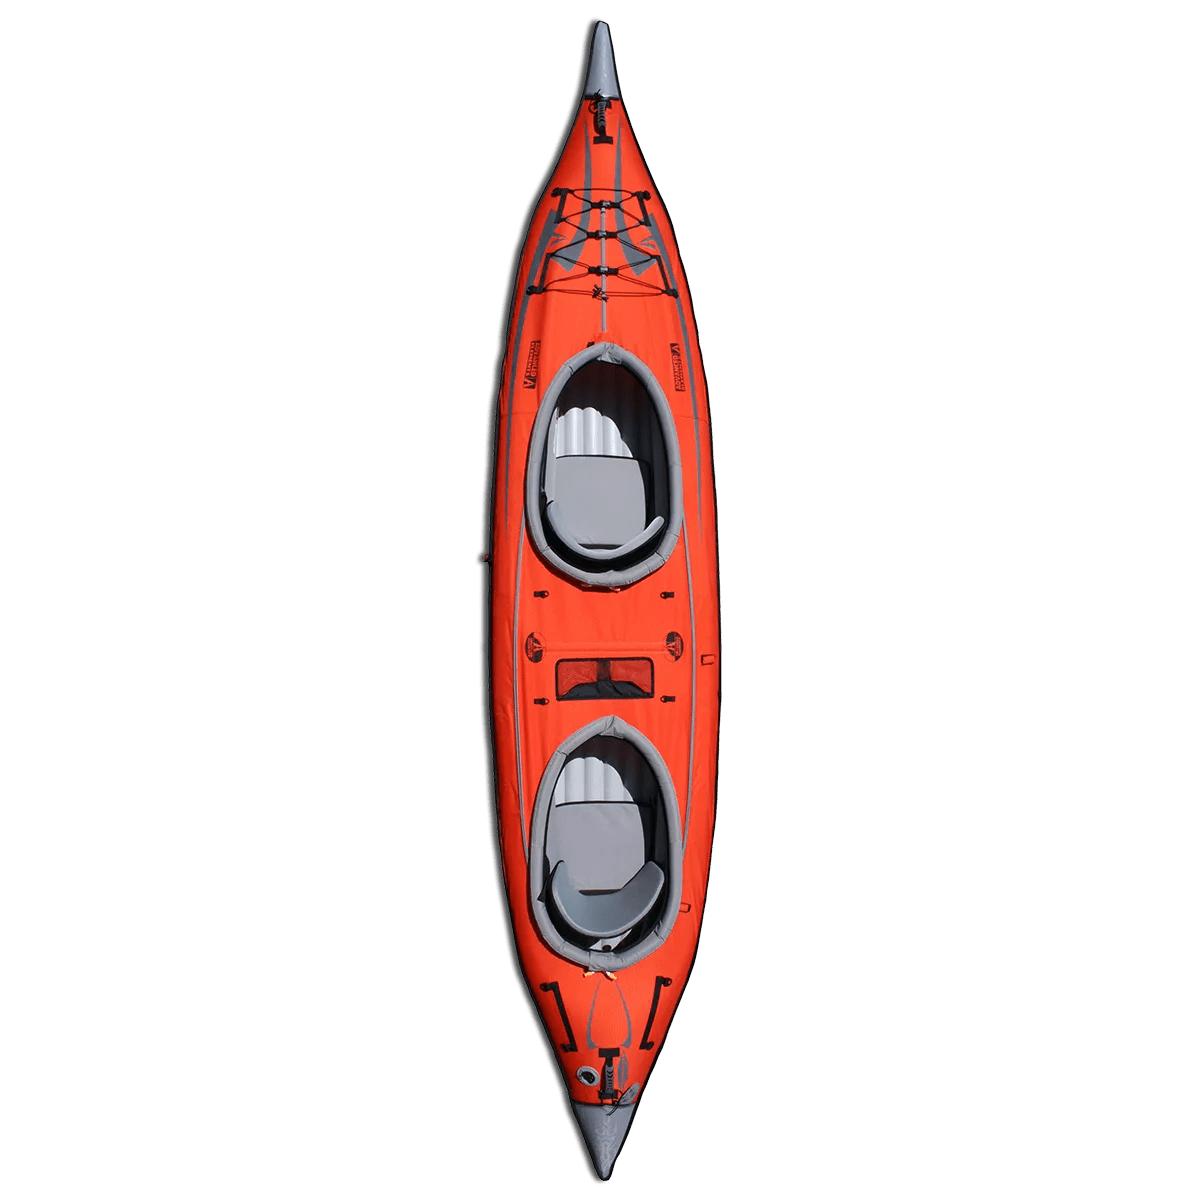 ADVANCED ELEMENTS - Pont de conversion pour kayak Advancedframe Convertible – Double - Red - AE2022-R - TOP